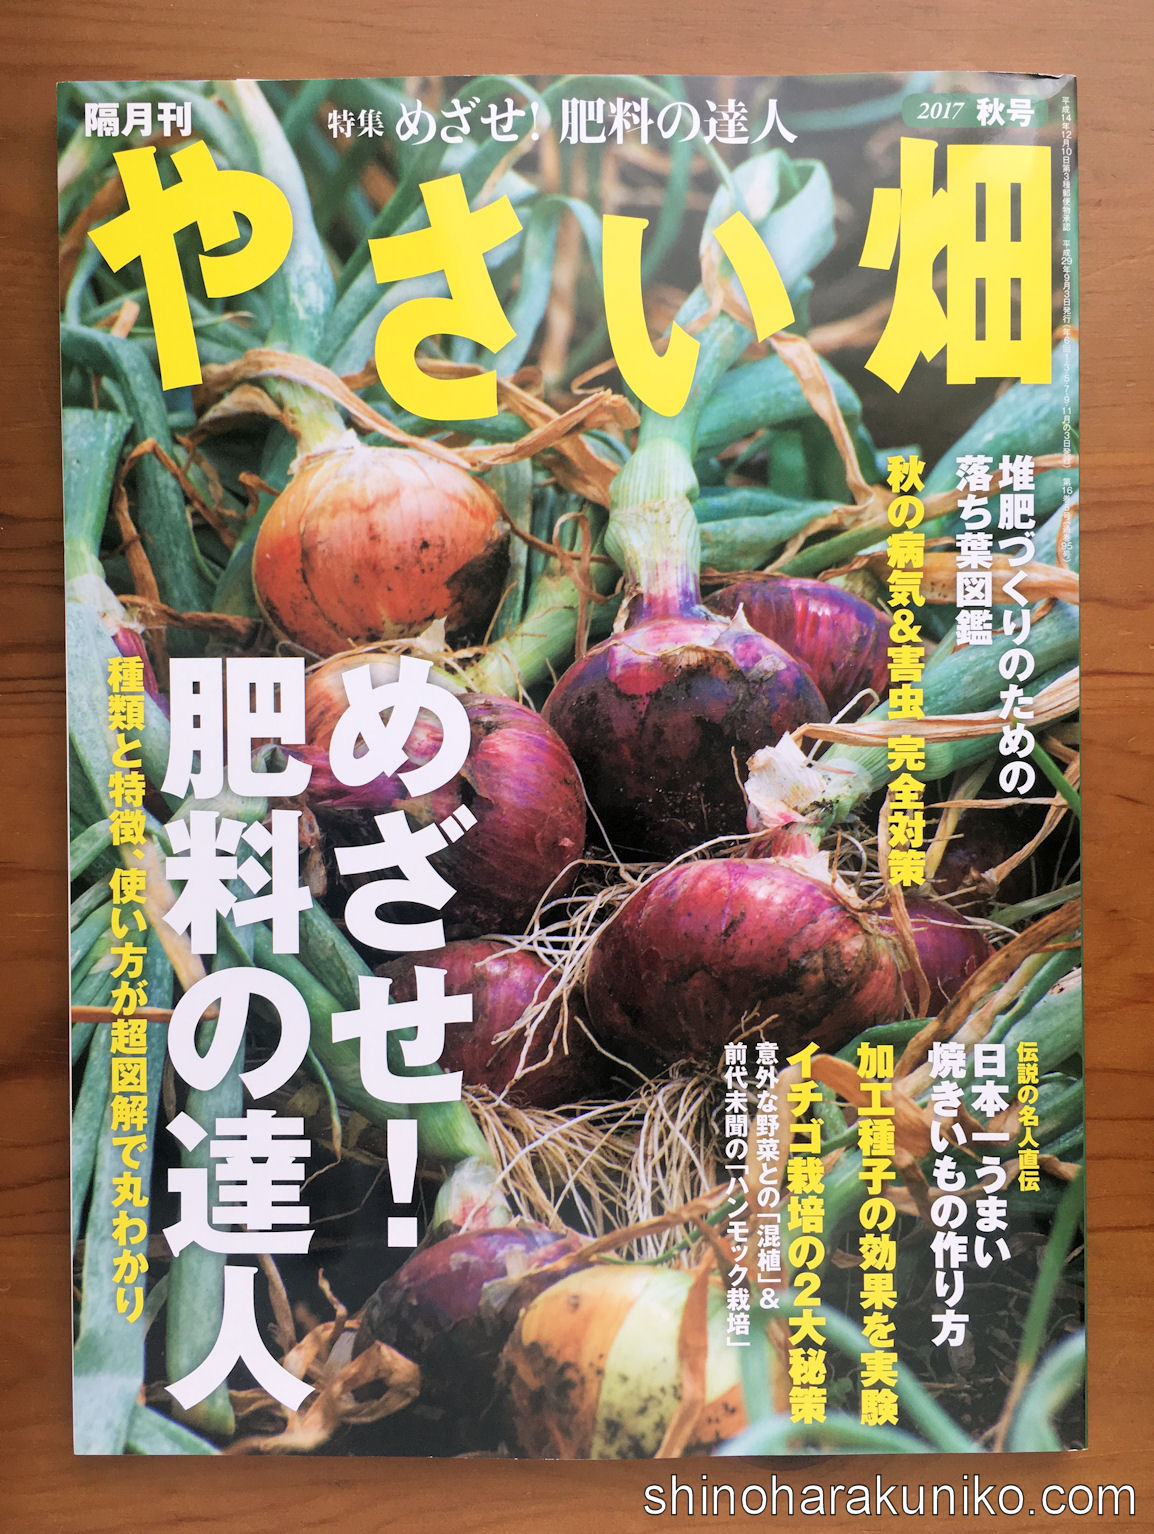 執筆記事 No 1菜園雑誌 やさい畑 17秋号で横浜市の苅部博之さんをご紹介